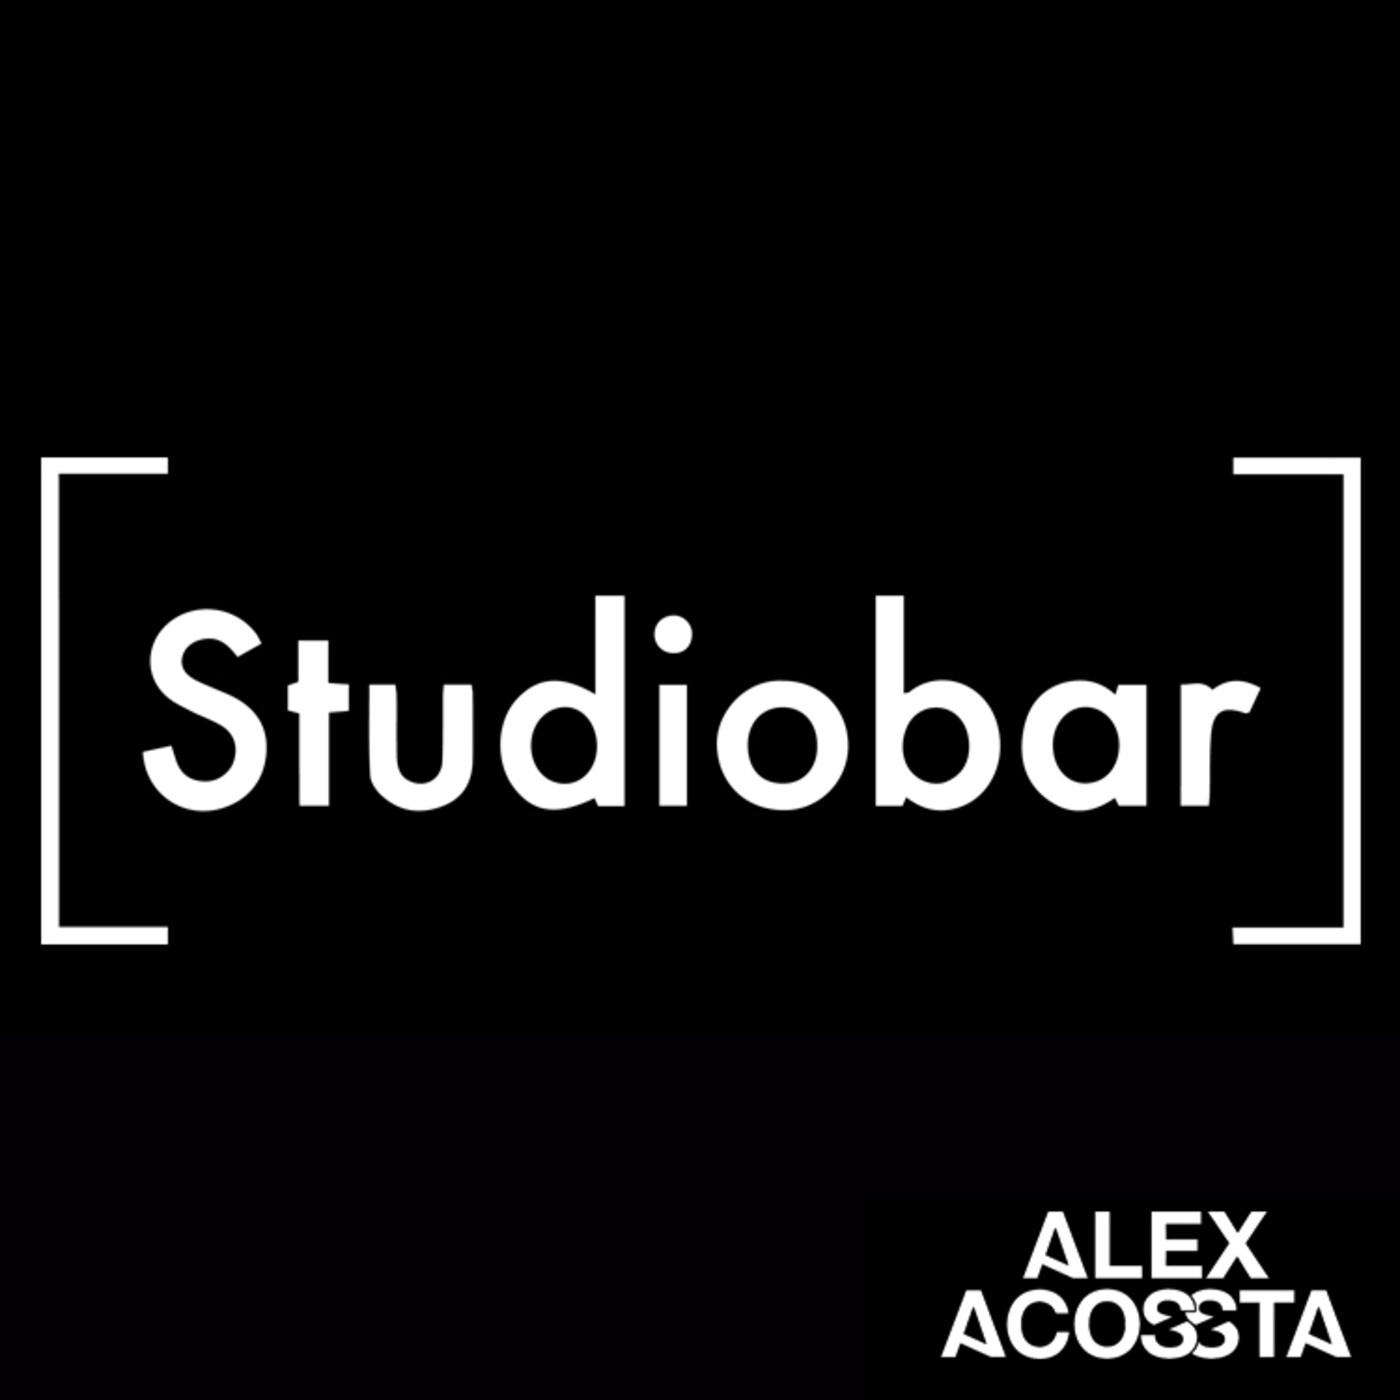 Alex Acossta - Promo Mix 19 - Studiobar Vibes Vol. 2